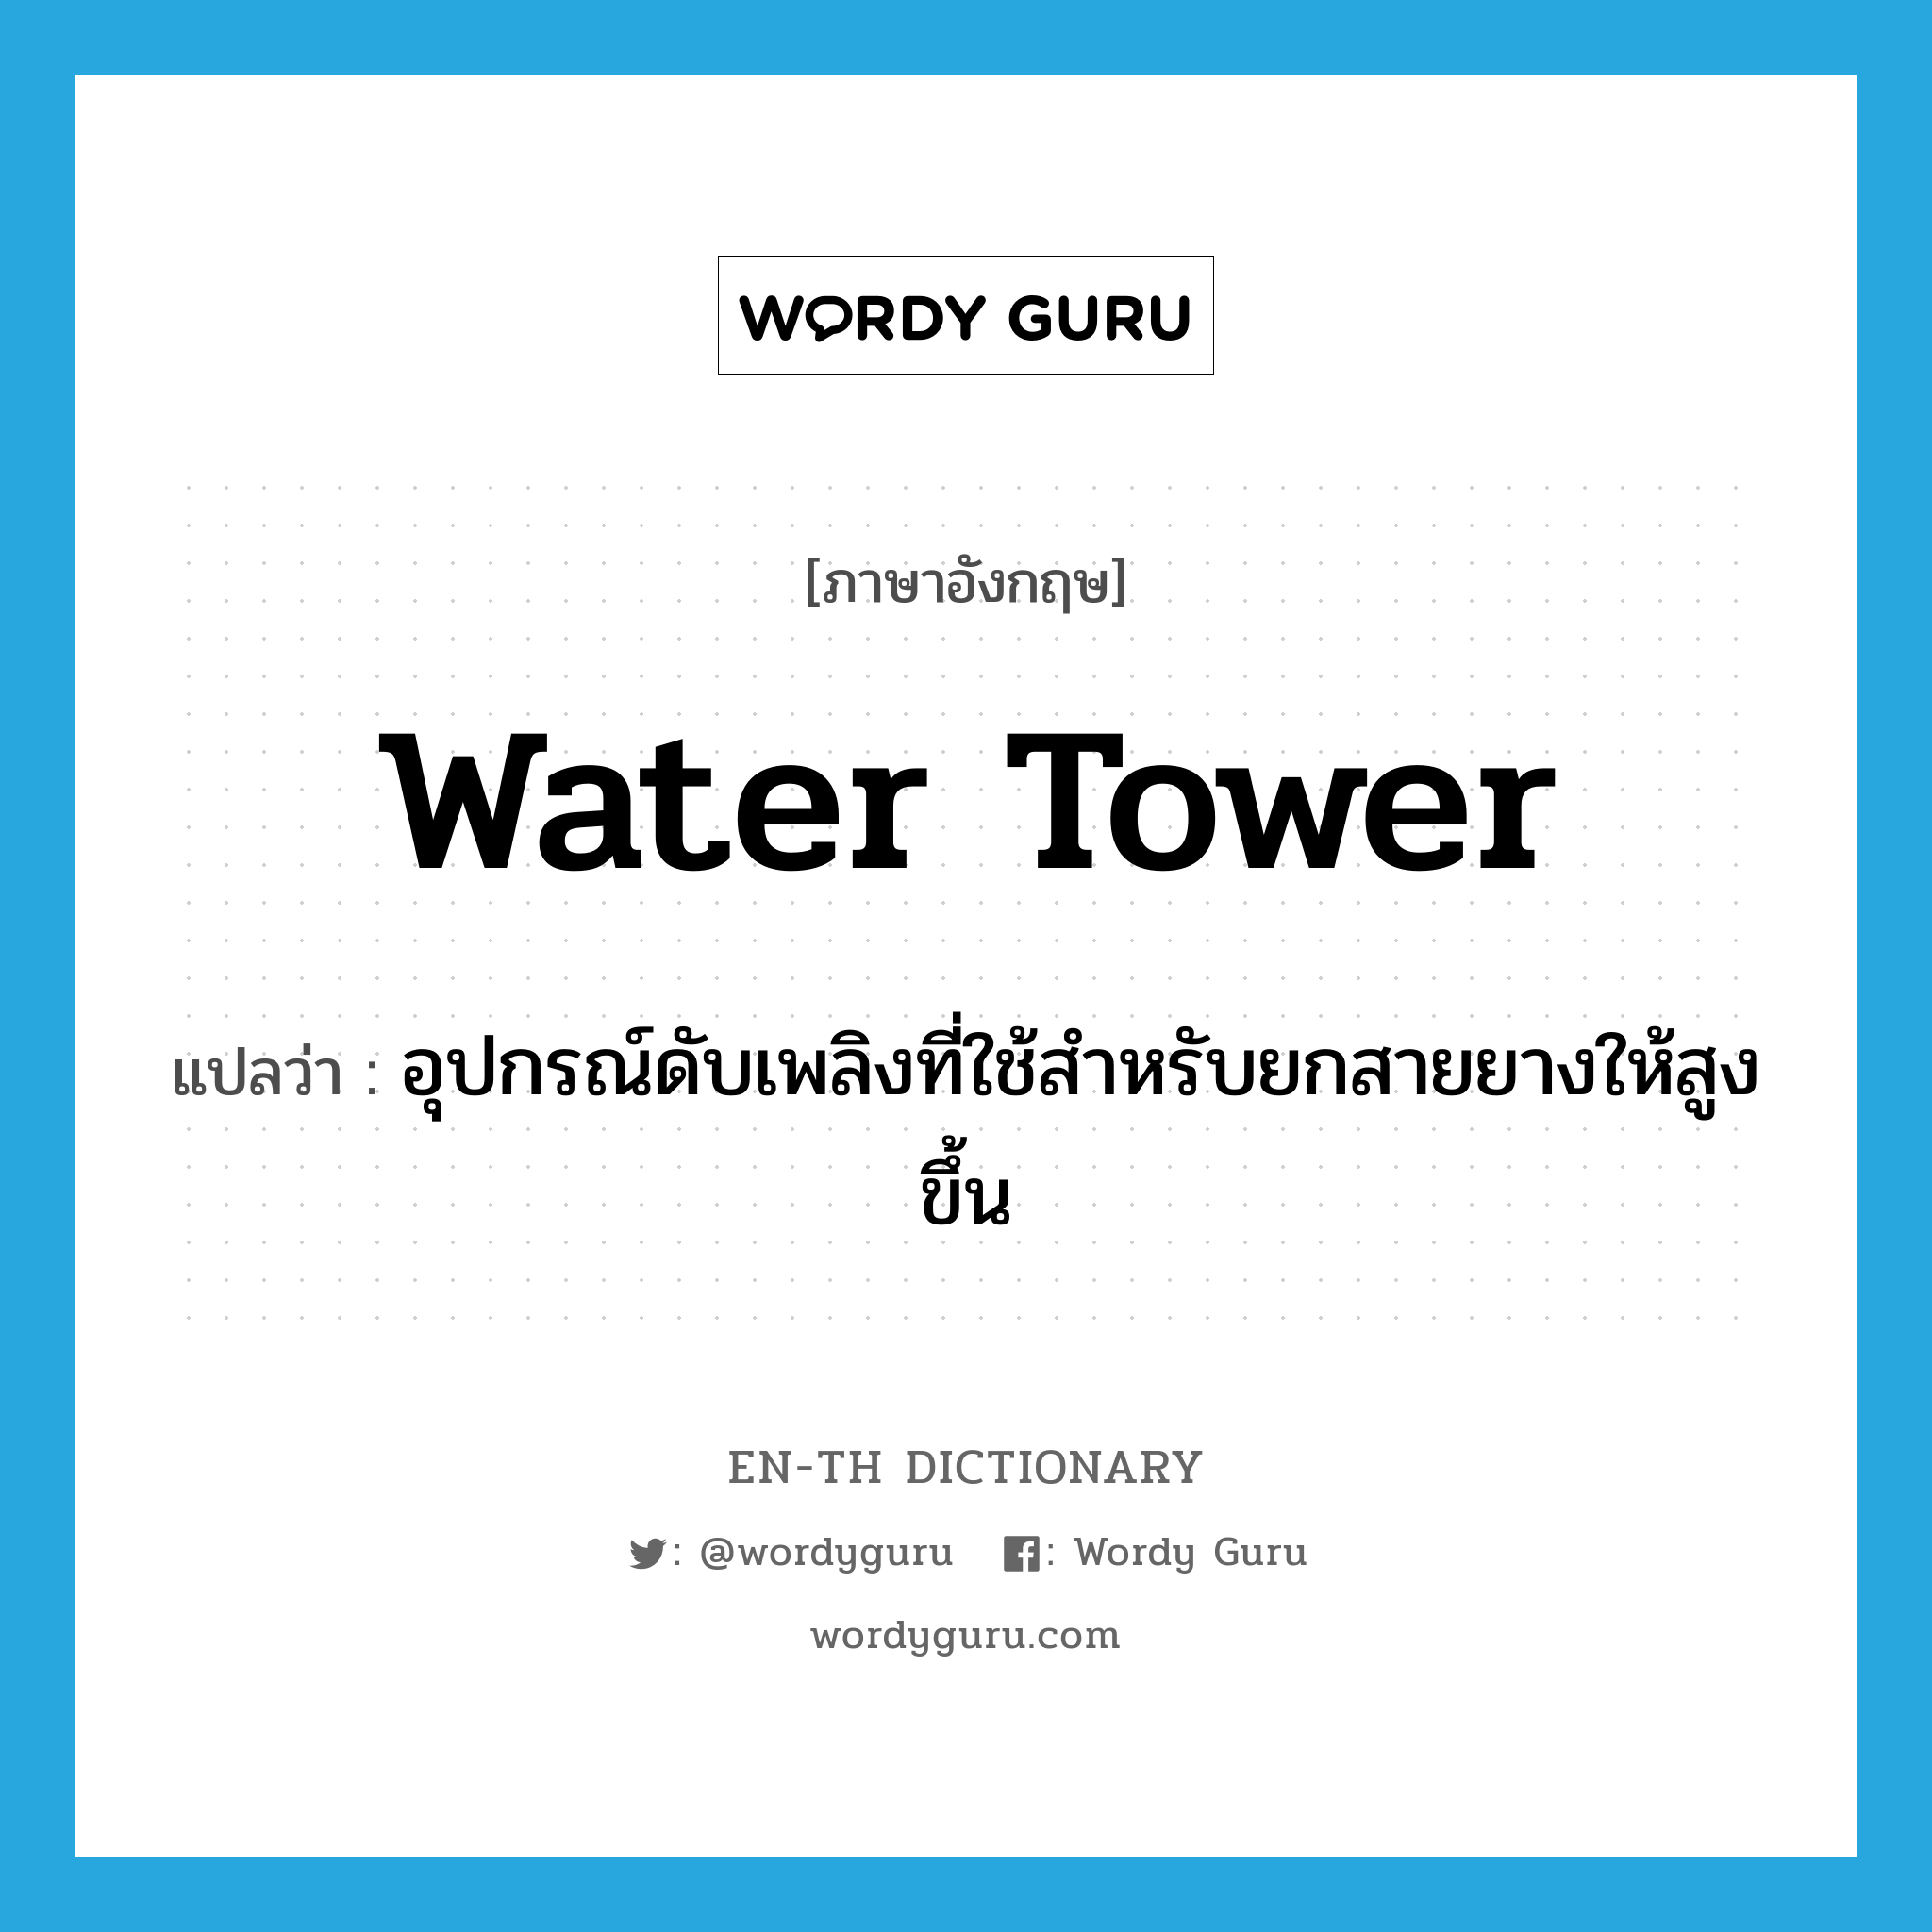 water tower แปลว่า?, คำศัพท์ภาษาอังกฤษ water tower แปลว่า อุปกรณ์ดับเพลิงที่ใช้สำหรับยกสายยางให้สูงขึ้น ประเภท N หมวด N